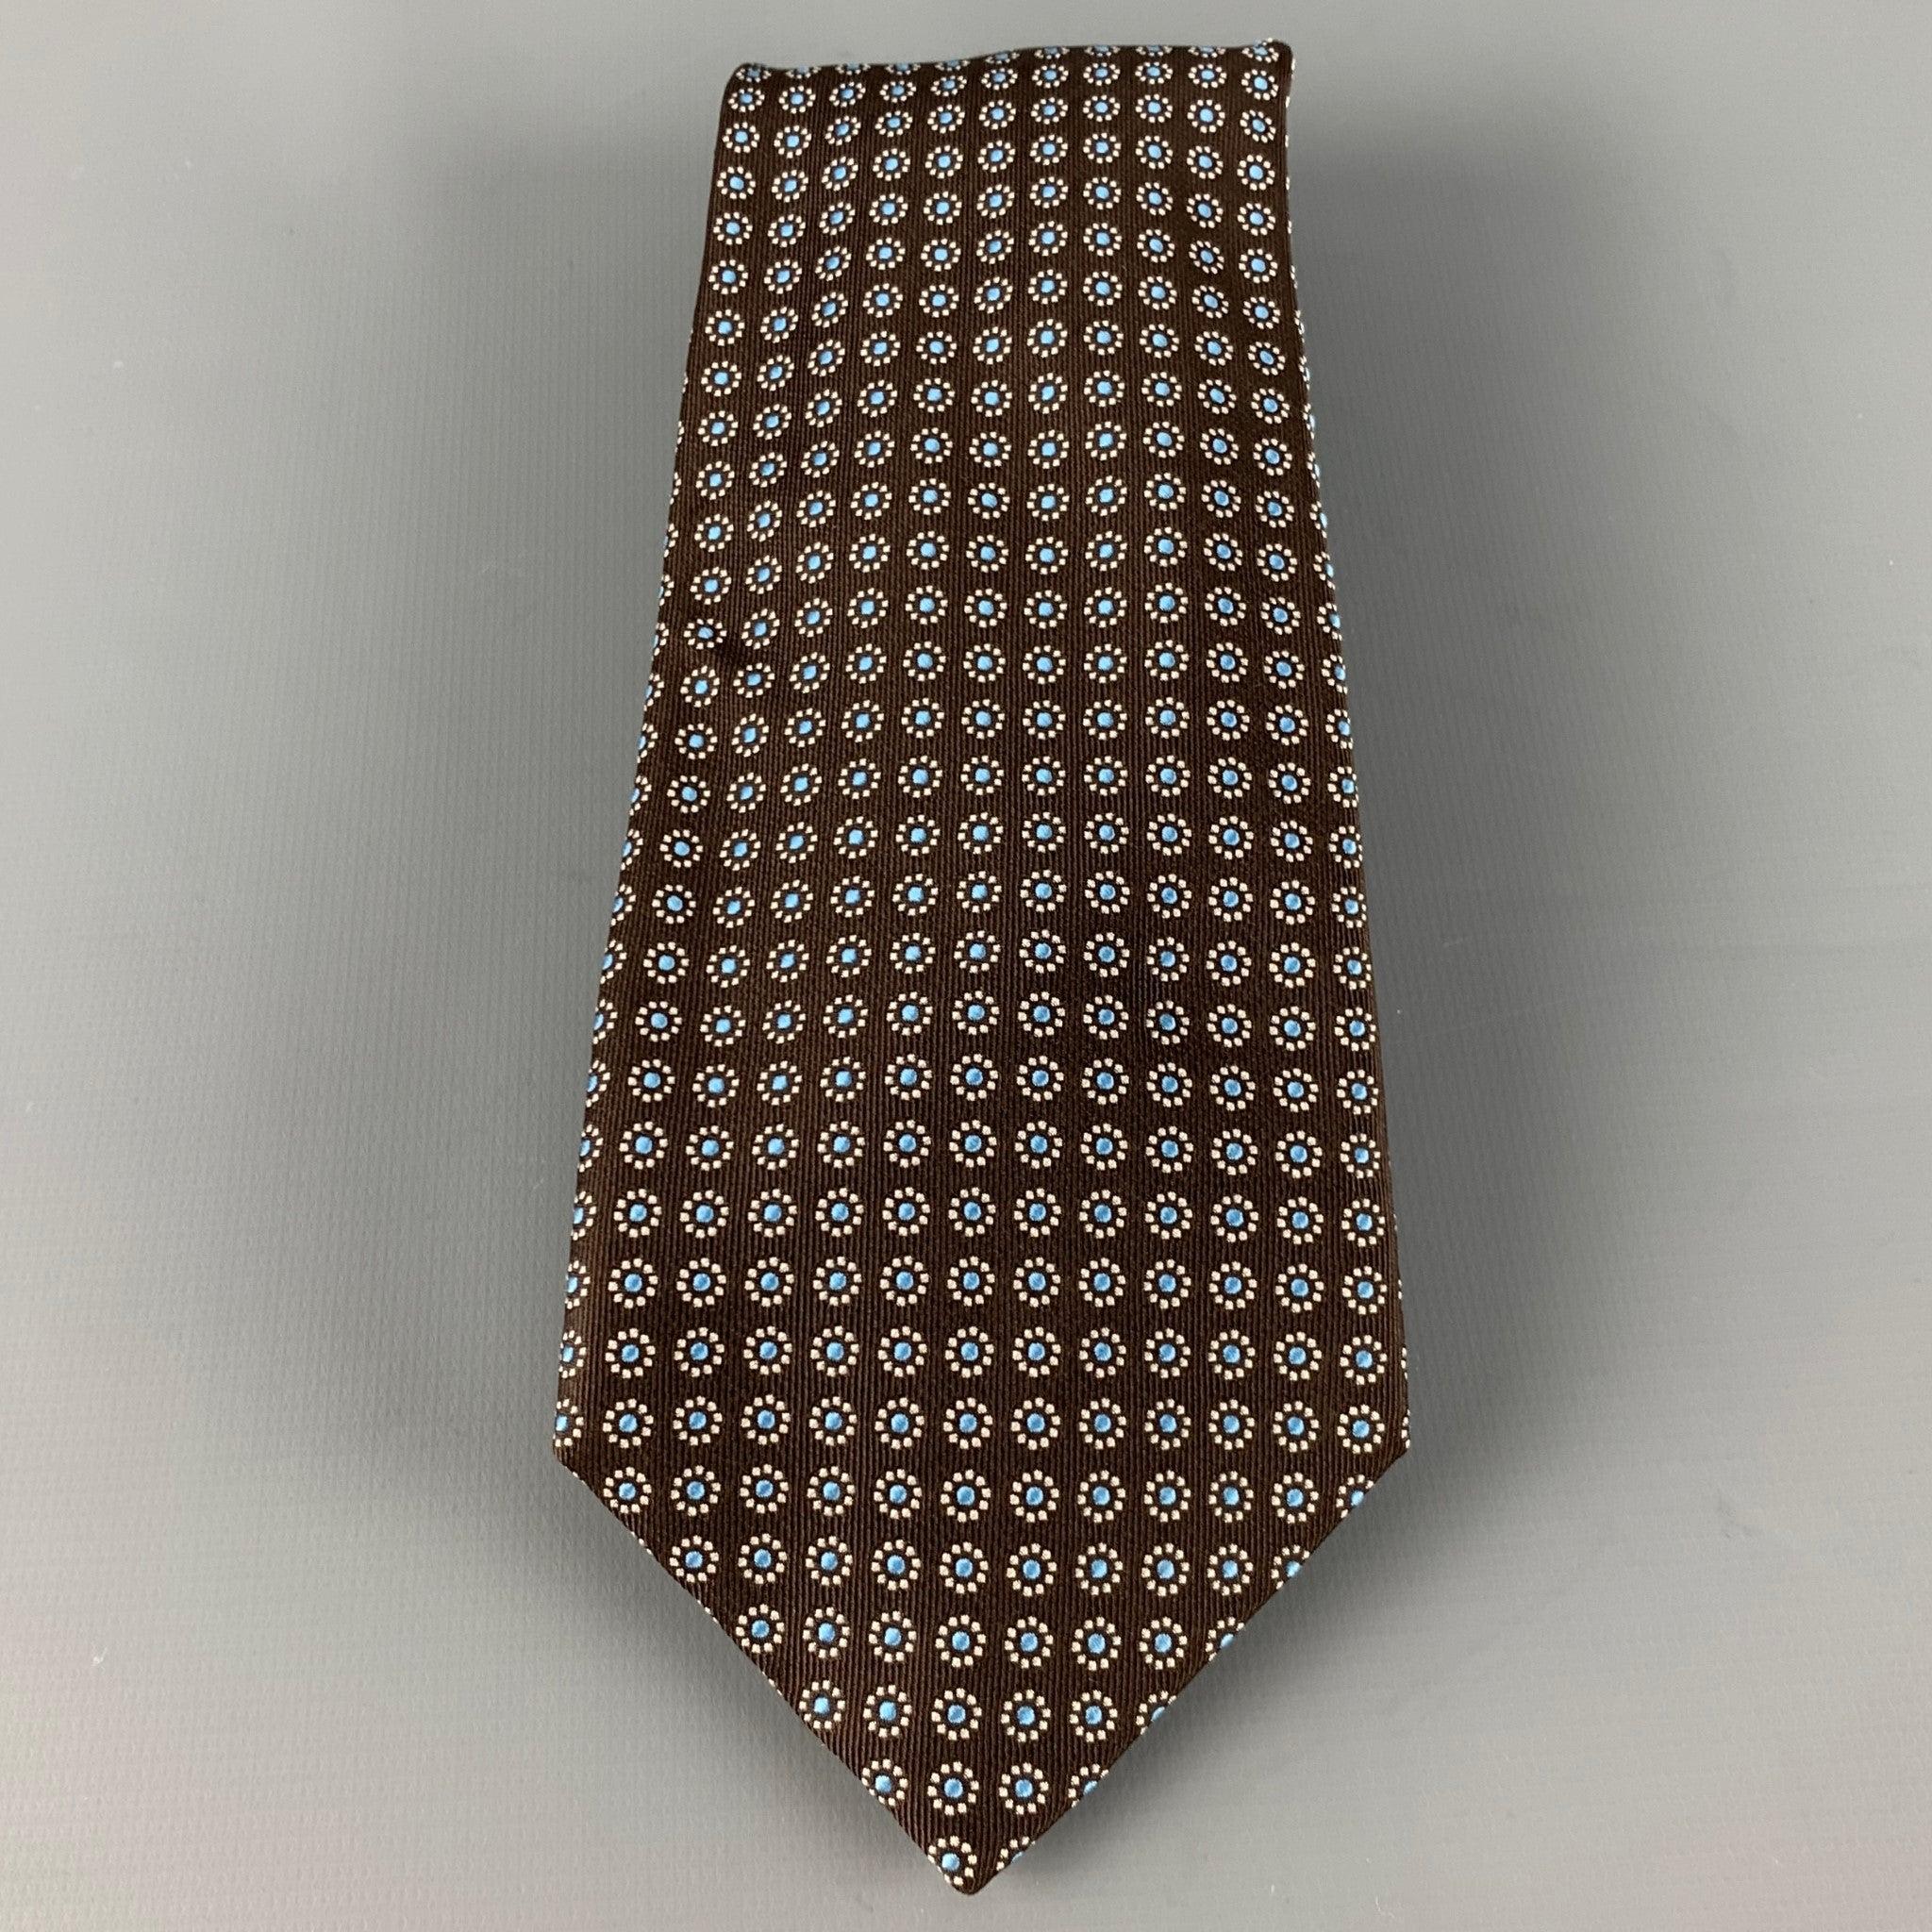 BARNEY'S NEW YORK
Krawatte aus brauner Seide mit einem abstrakten Blumenmuster in Weiß und Hellblau. Handgefertigt in Italien, sehr guter gebrauchter Zustand. 

Abmessungen: 
  Breite: 3,5 Zoll Länge: 61 Zoll 
  
  
 
Referenz: 126588
Kategorie: